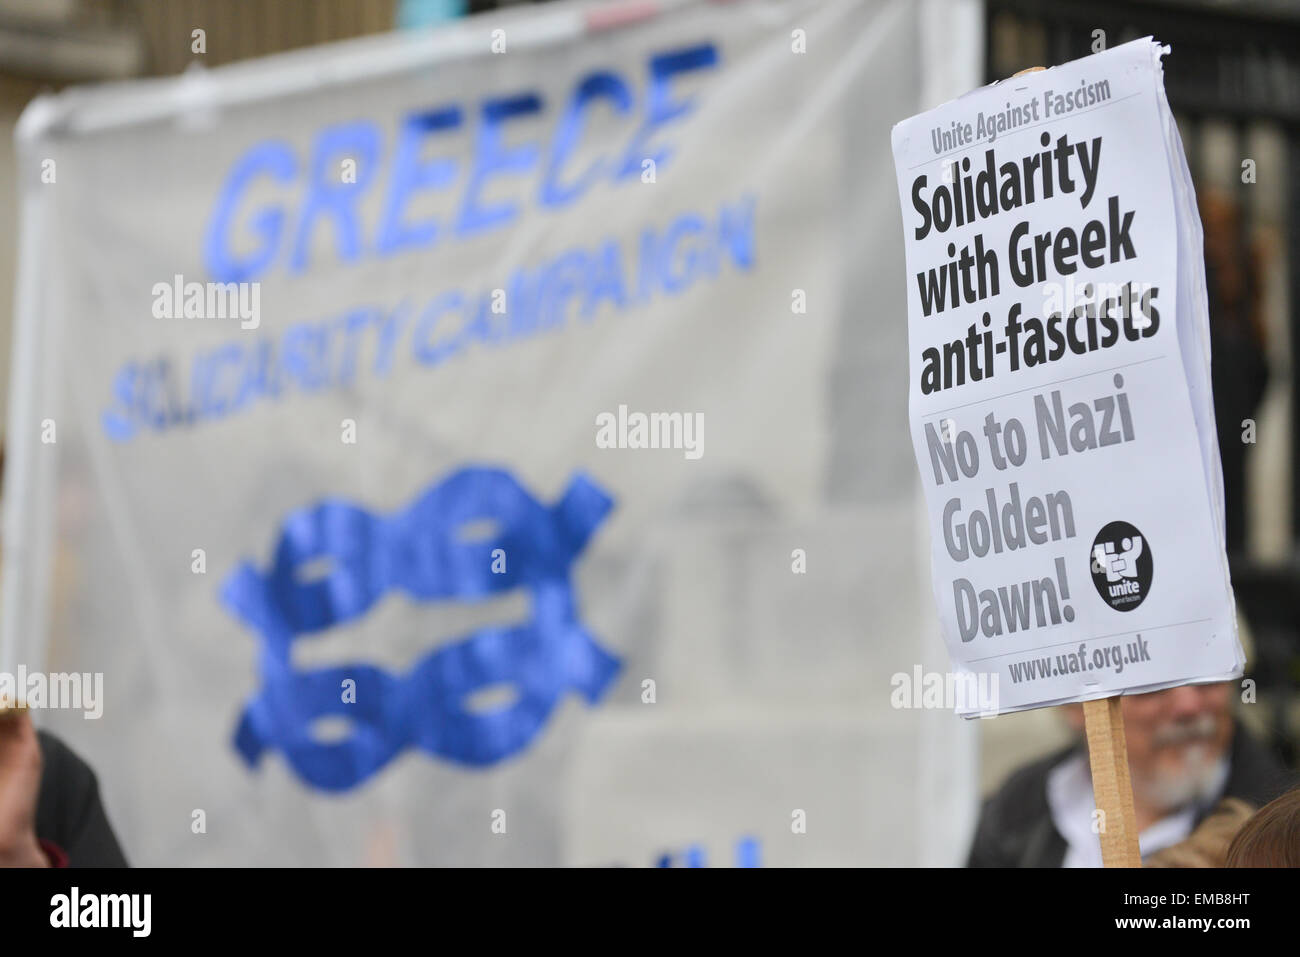 Trafalgar Square, Londres, Royaume-Uni. 19 avril 2015. Un groupe montrant leur solidarité avec l'étape anti fascistes grecs une démo à Trafalgar Square. Crédit : Matthieu Chattle/Alamy Live News Banque D'Images